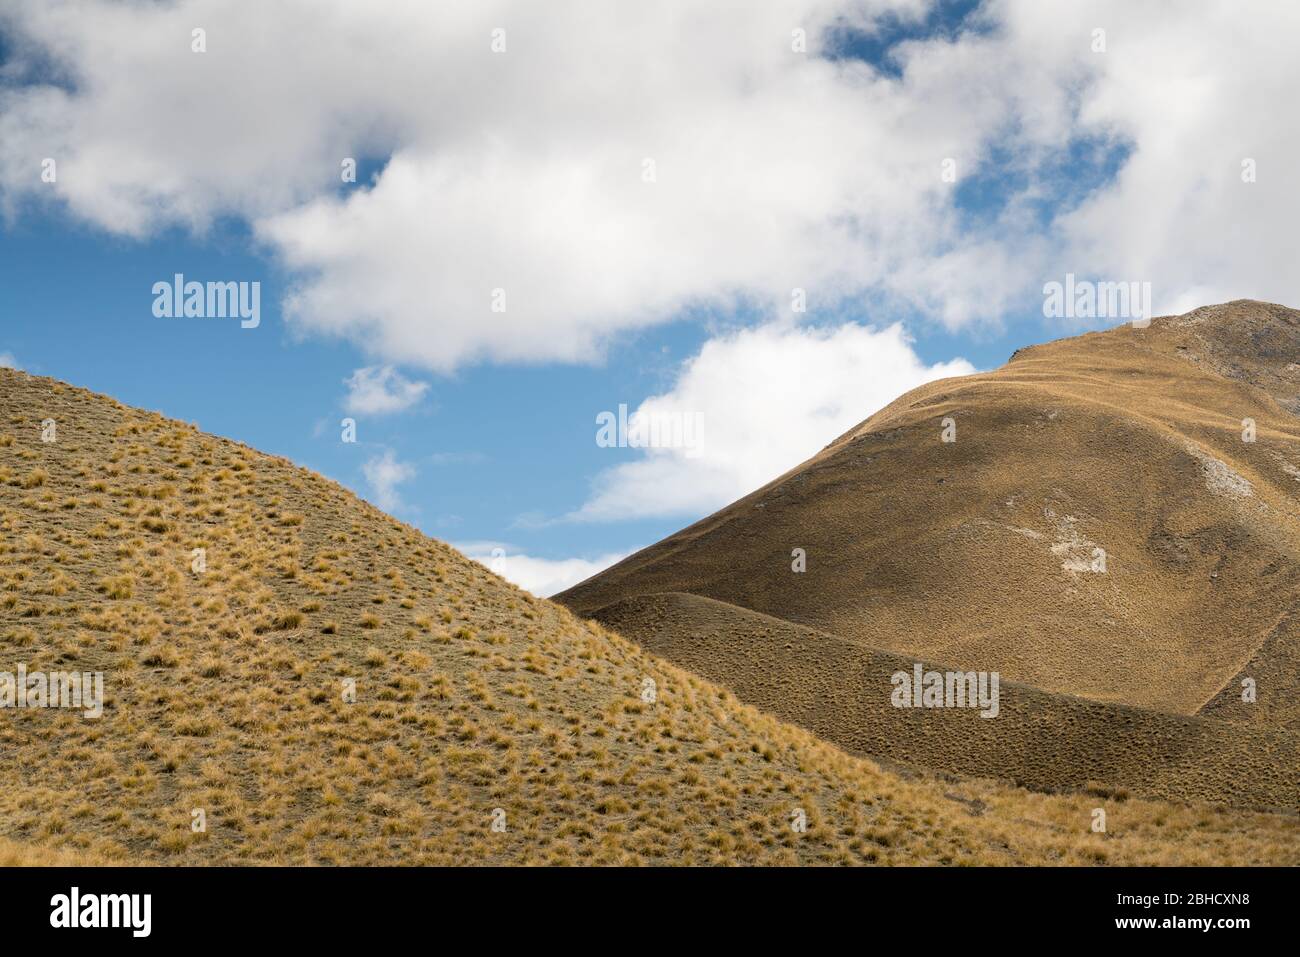 Recortada en vista abstracta de colinas ondulantes marrones moncromadas sin árboles con nubes blancas y cielo azul por encima Foto de stock